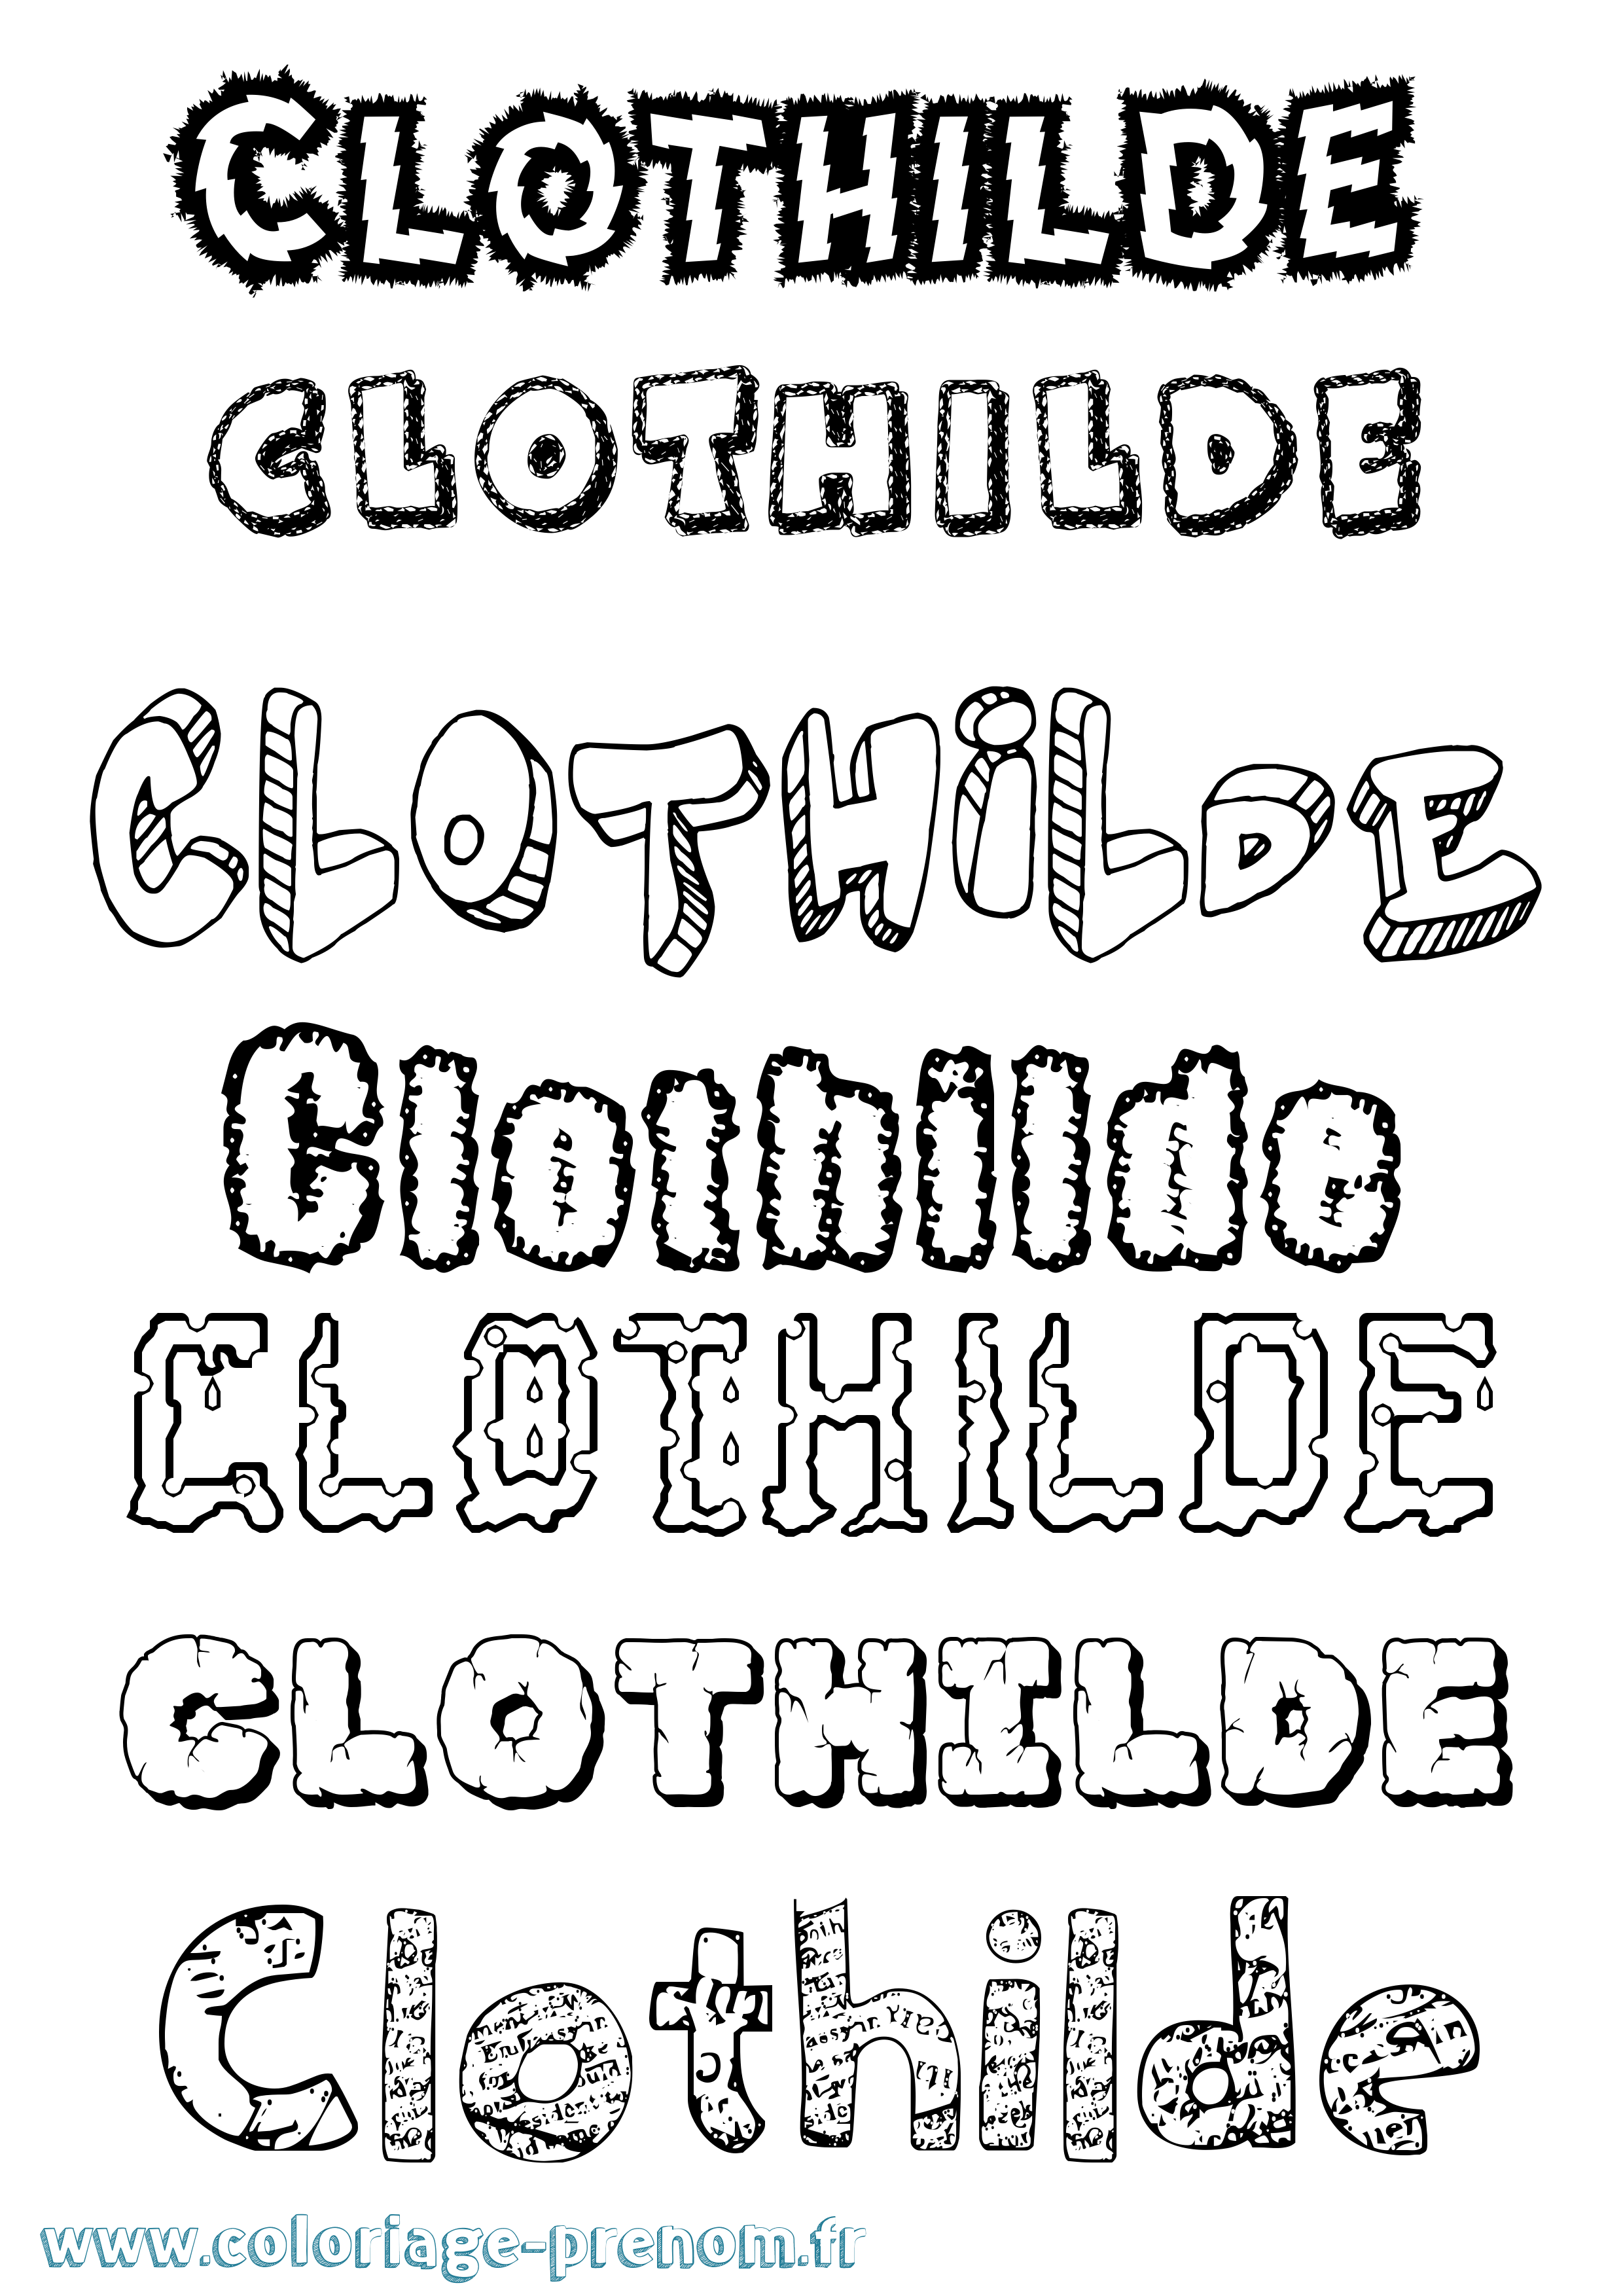 Coloriage prénom Clothilde